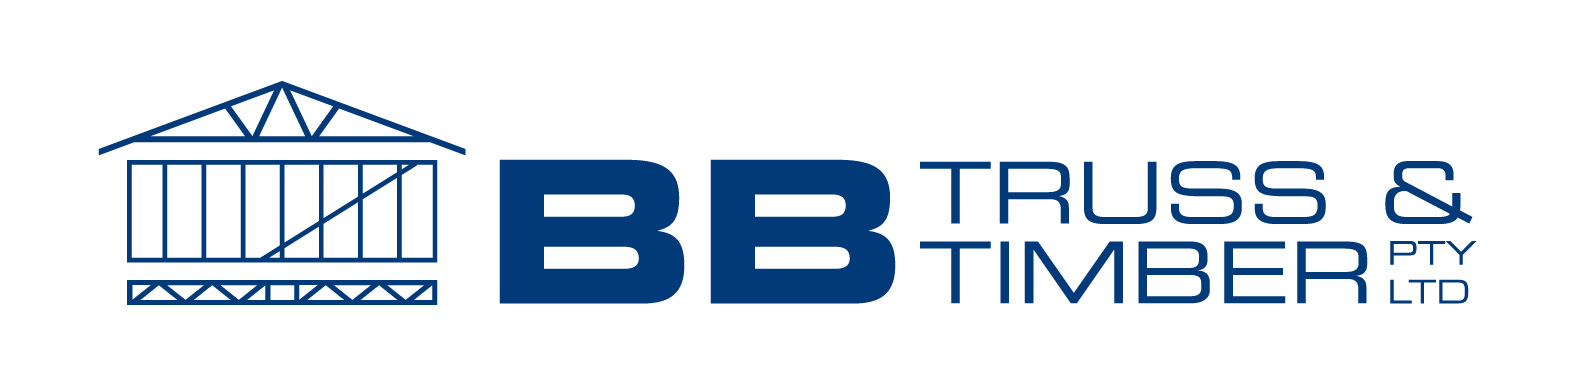 BB Truss & Timber Pty Ltd